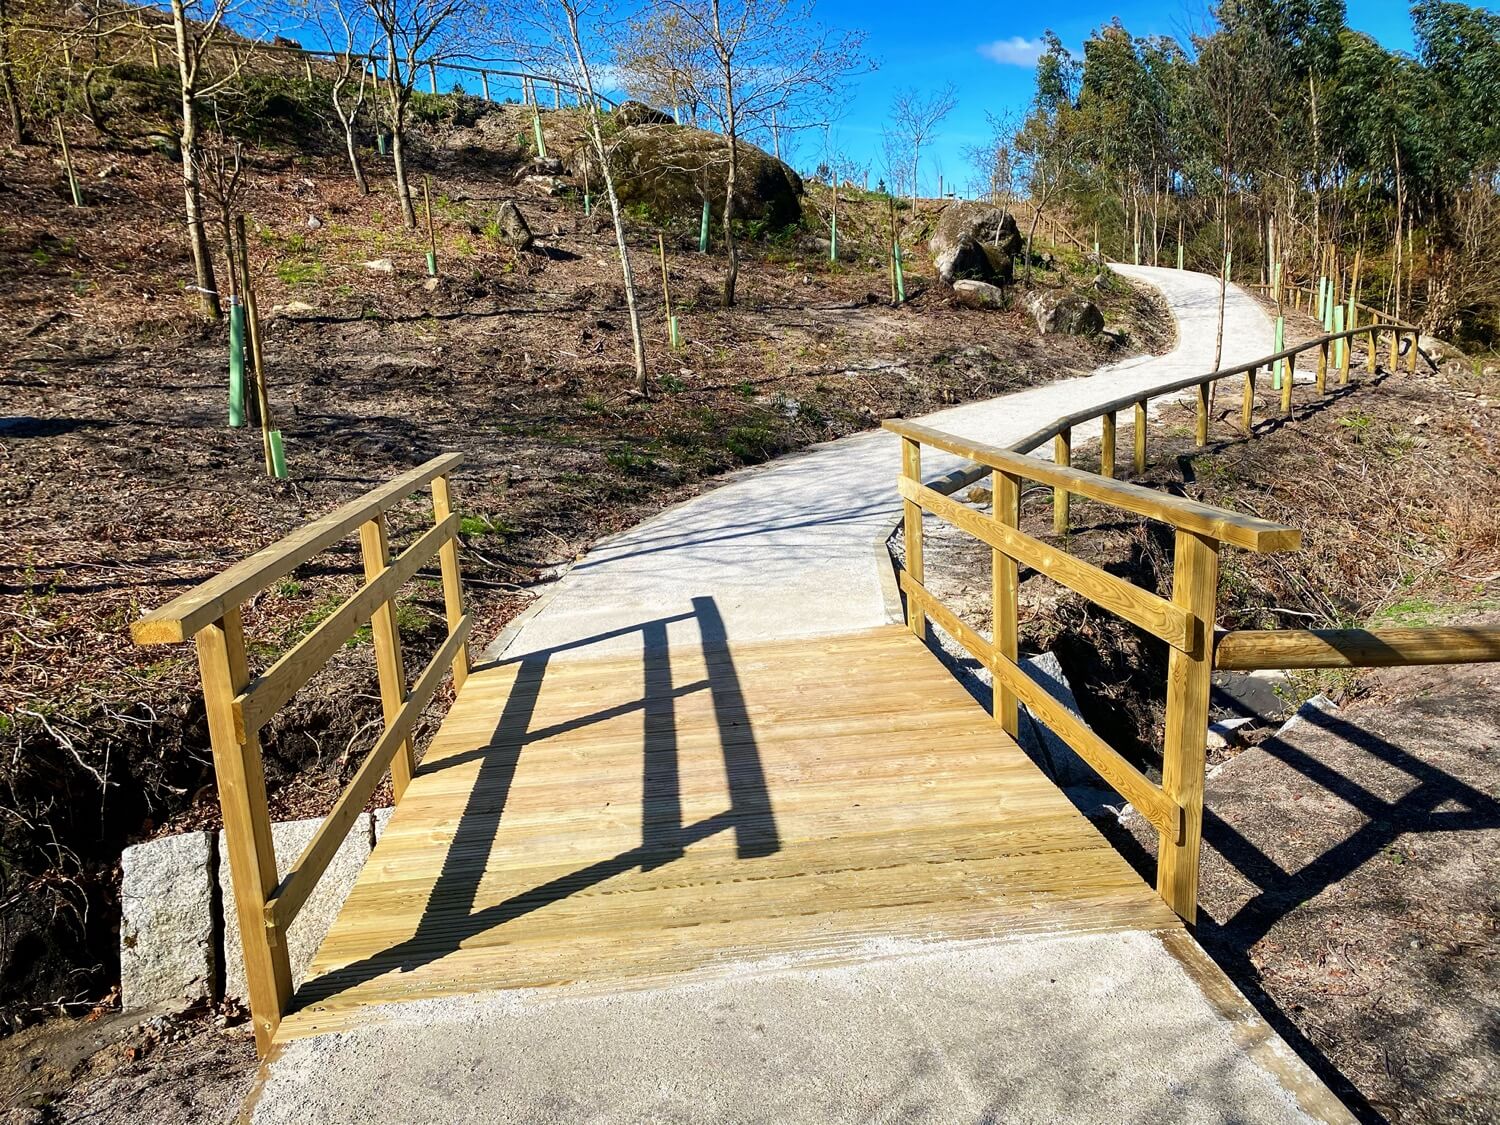 Mirador Regha Pieira Parque Forestal da Fracha Guíate Galicia